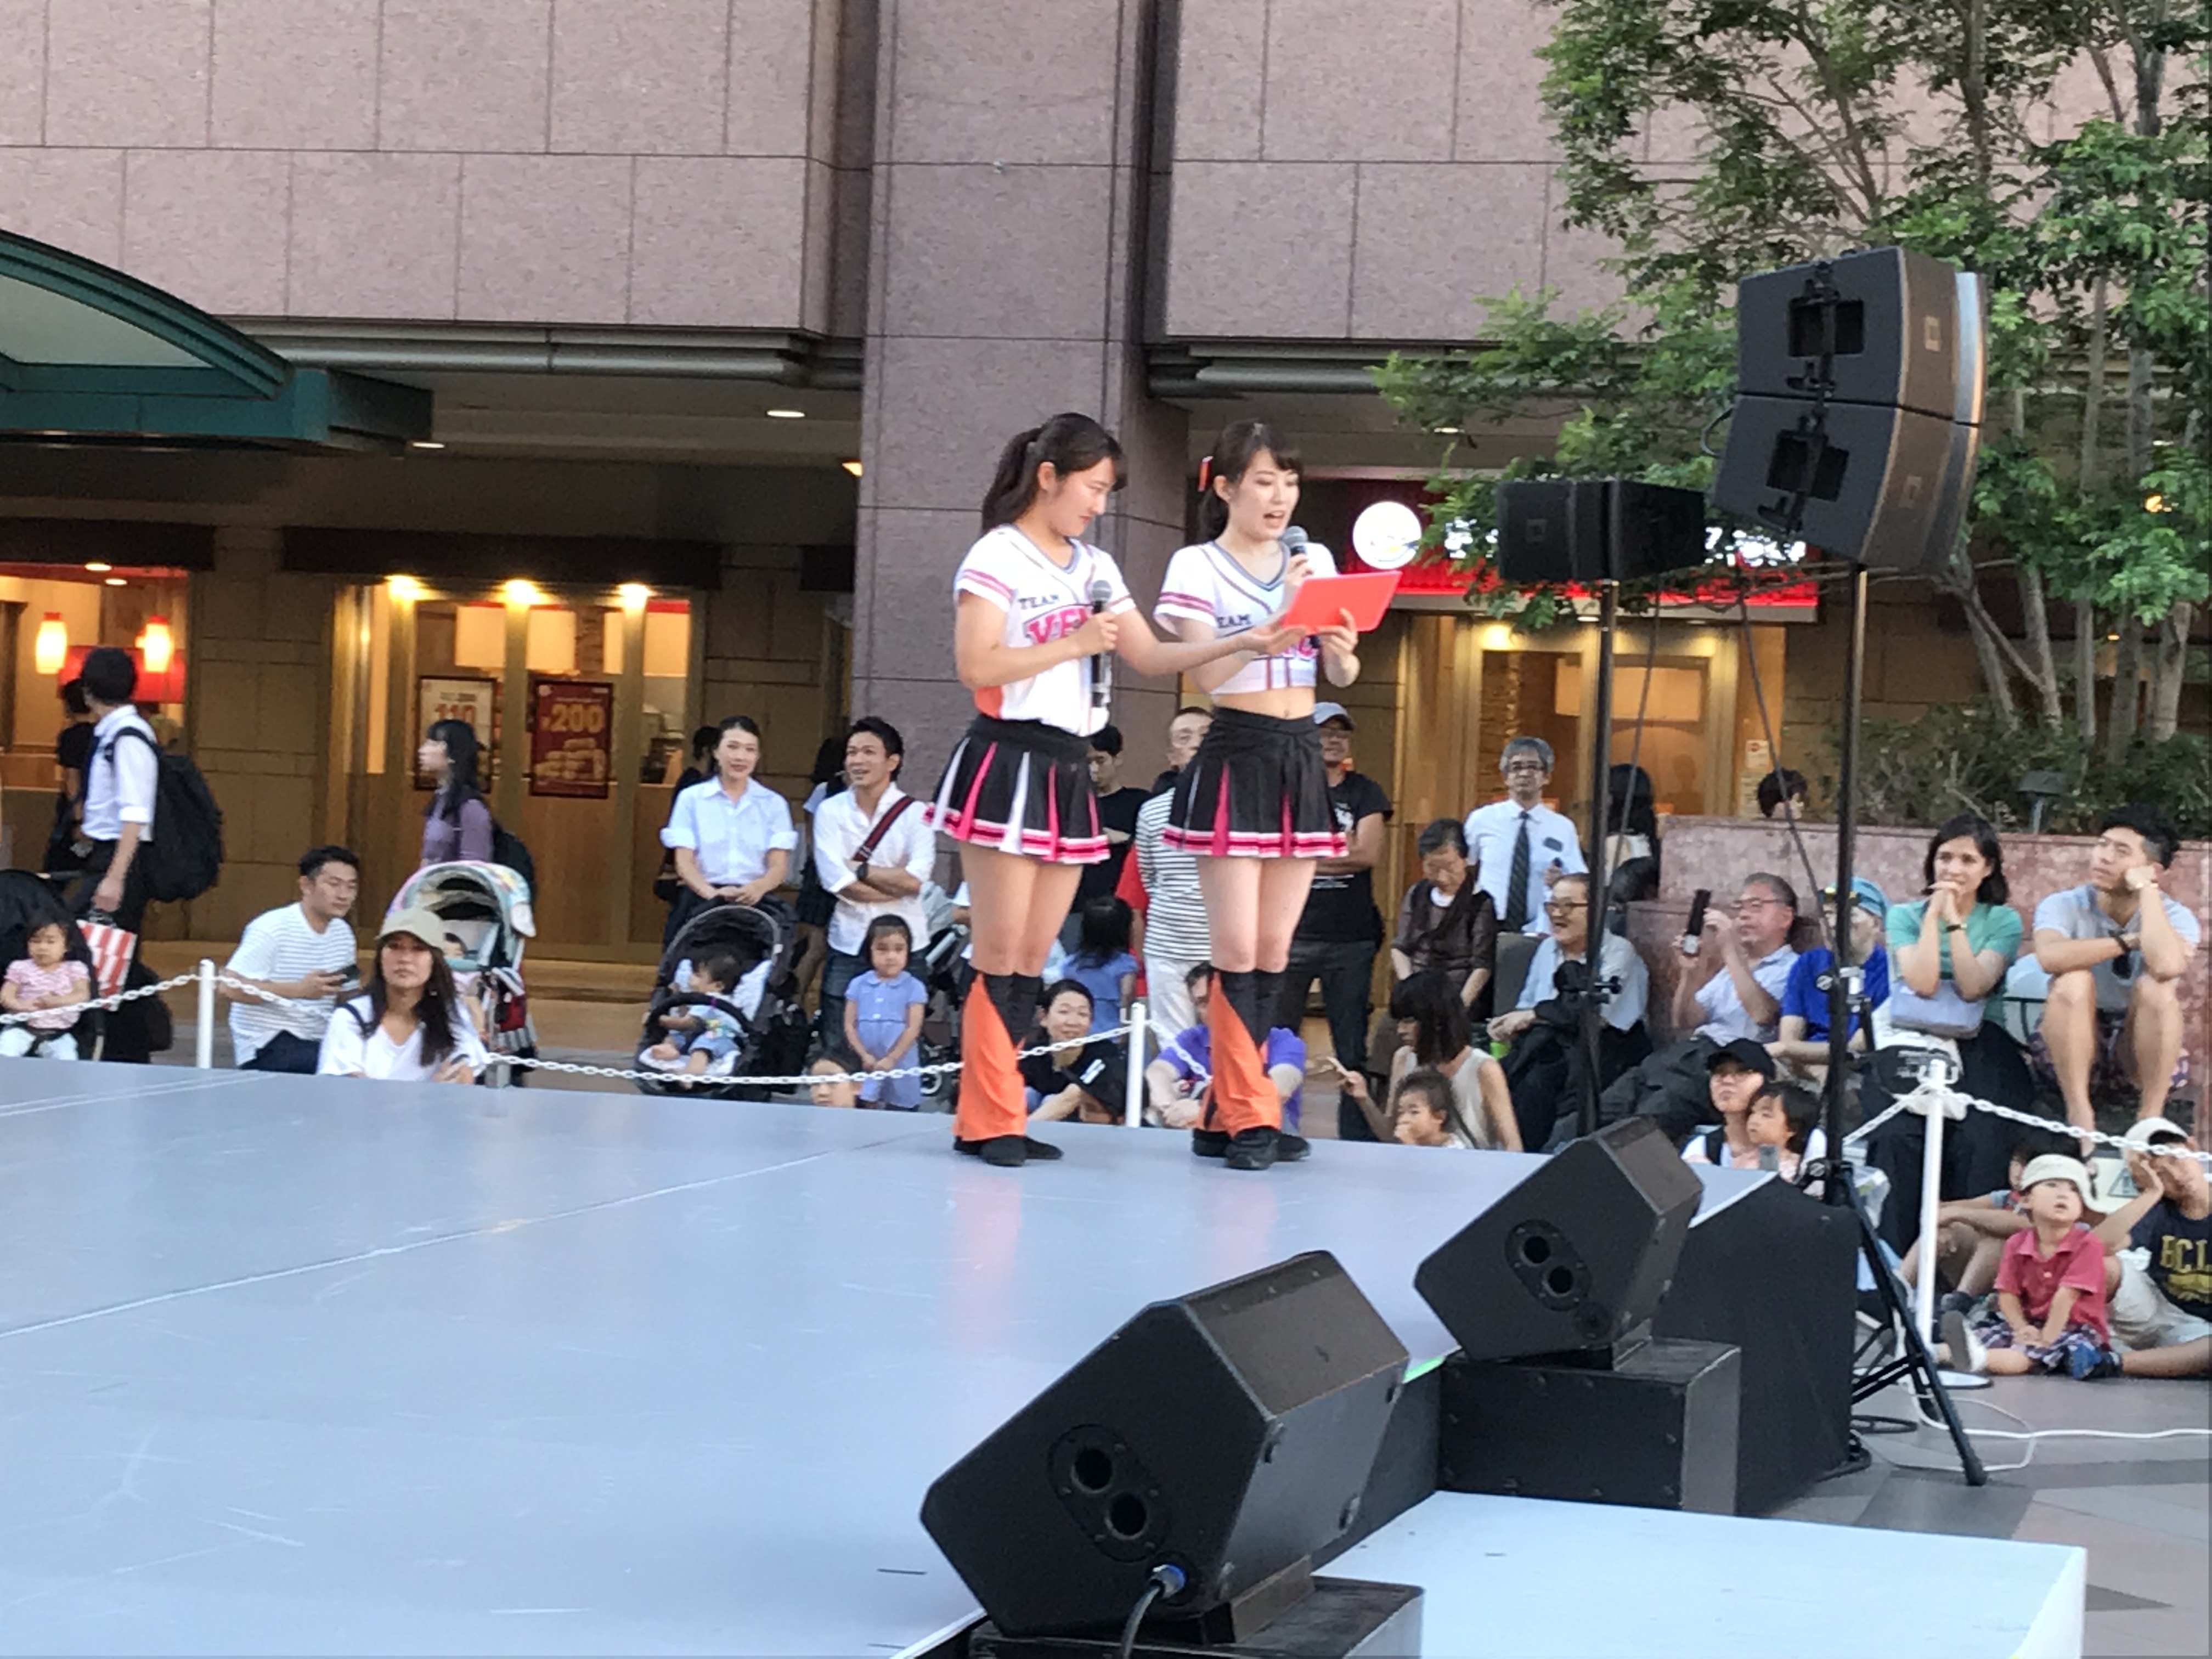 恵比寿文化祭でダンスを披露しました ヴィーナスダンススクール ジャイアンツ チームヴィーナス チアリーディング